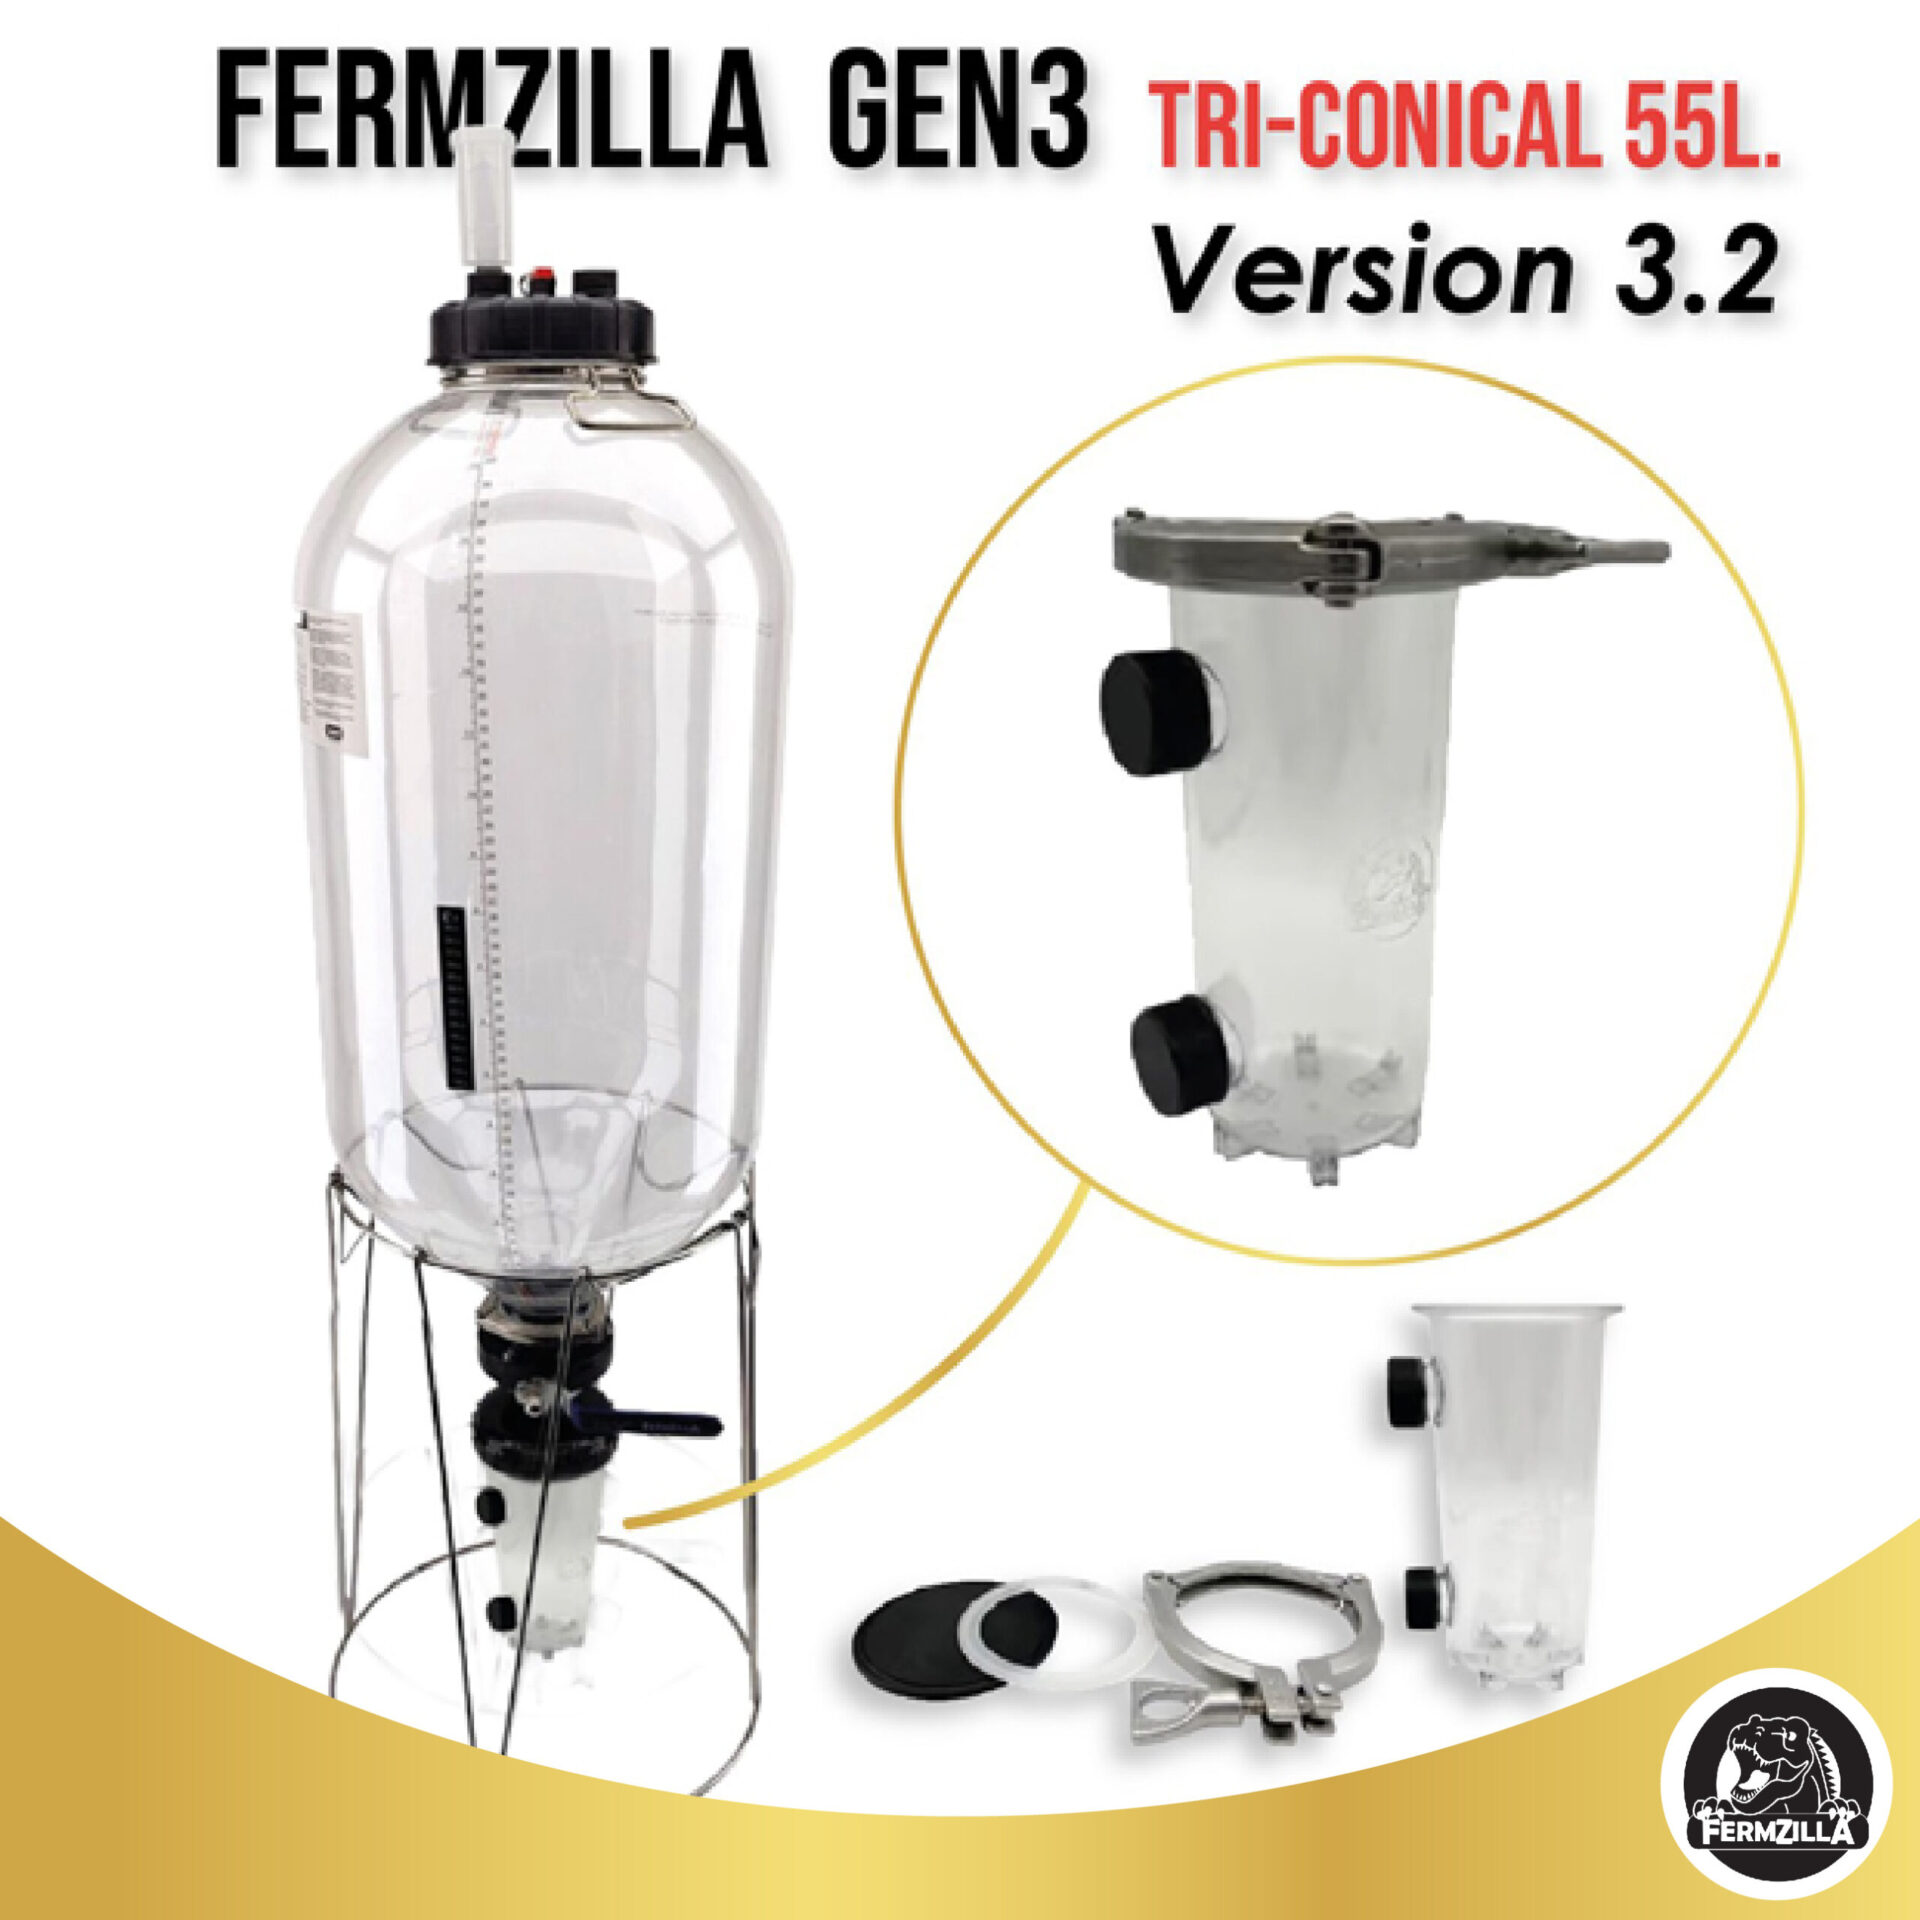 55l Fermenter Gen3 V3.2 01